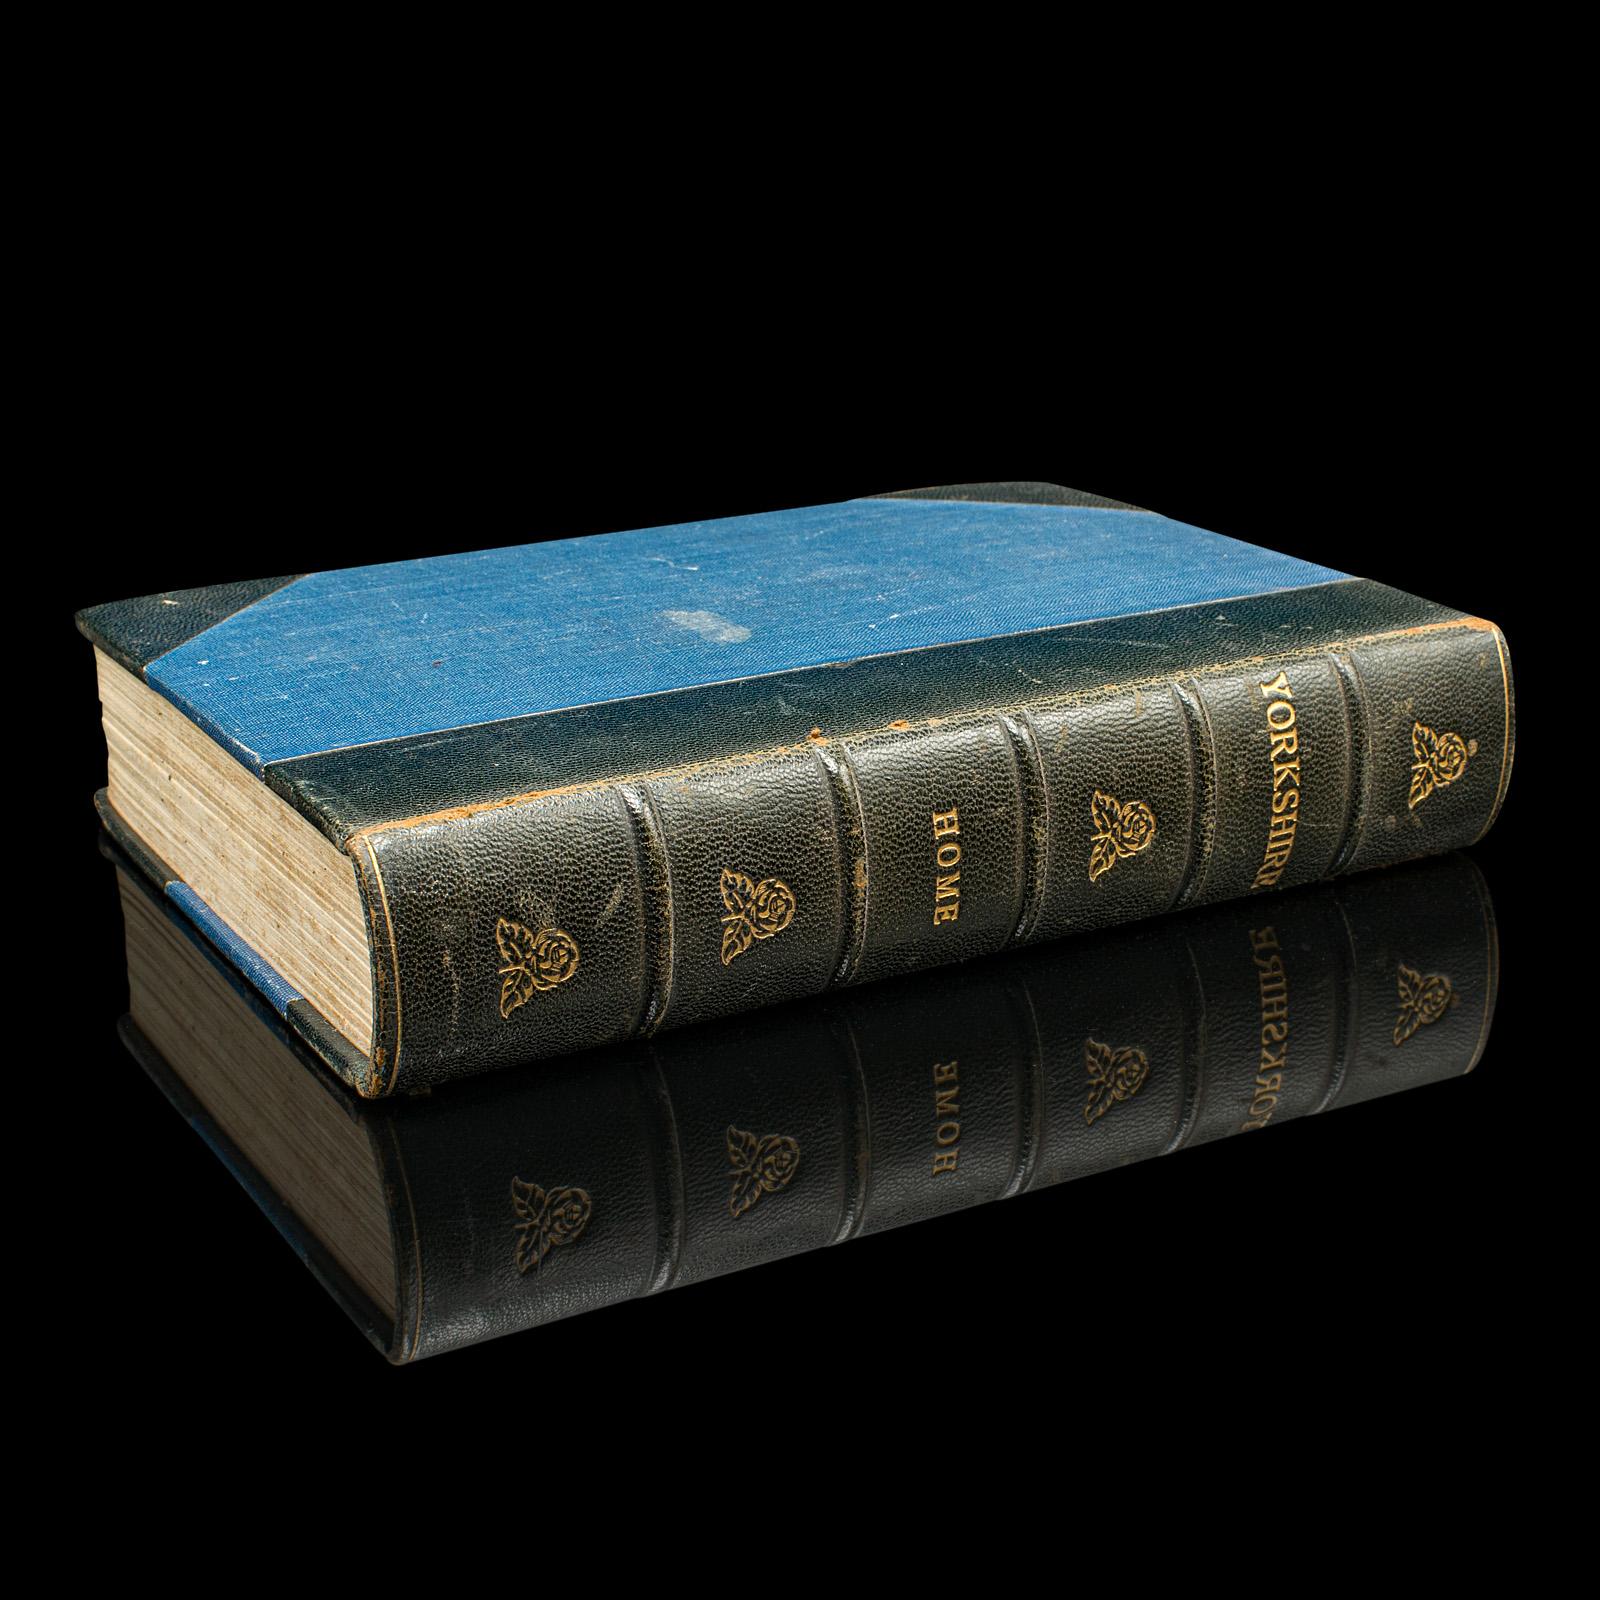 Il s'agit d'un exemplaire ancien de Yorkshire - Painted and Described par George Home. Guide de voyage anglais illustré, cette 3e édition a été publiée en 1925.

Né à Londres, Gordon Home (1878 - 1969) était un paysagiste et illustrateur anglais,